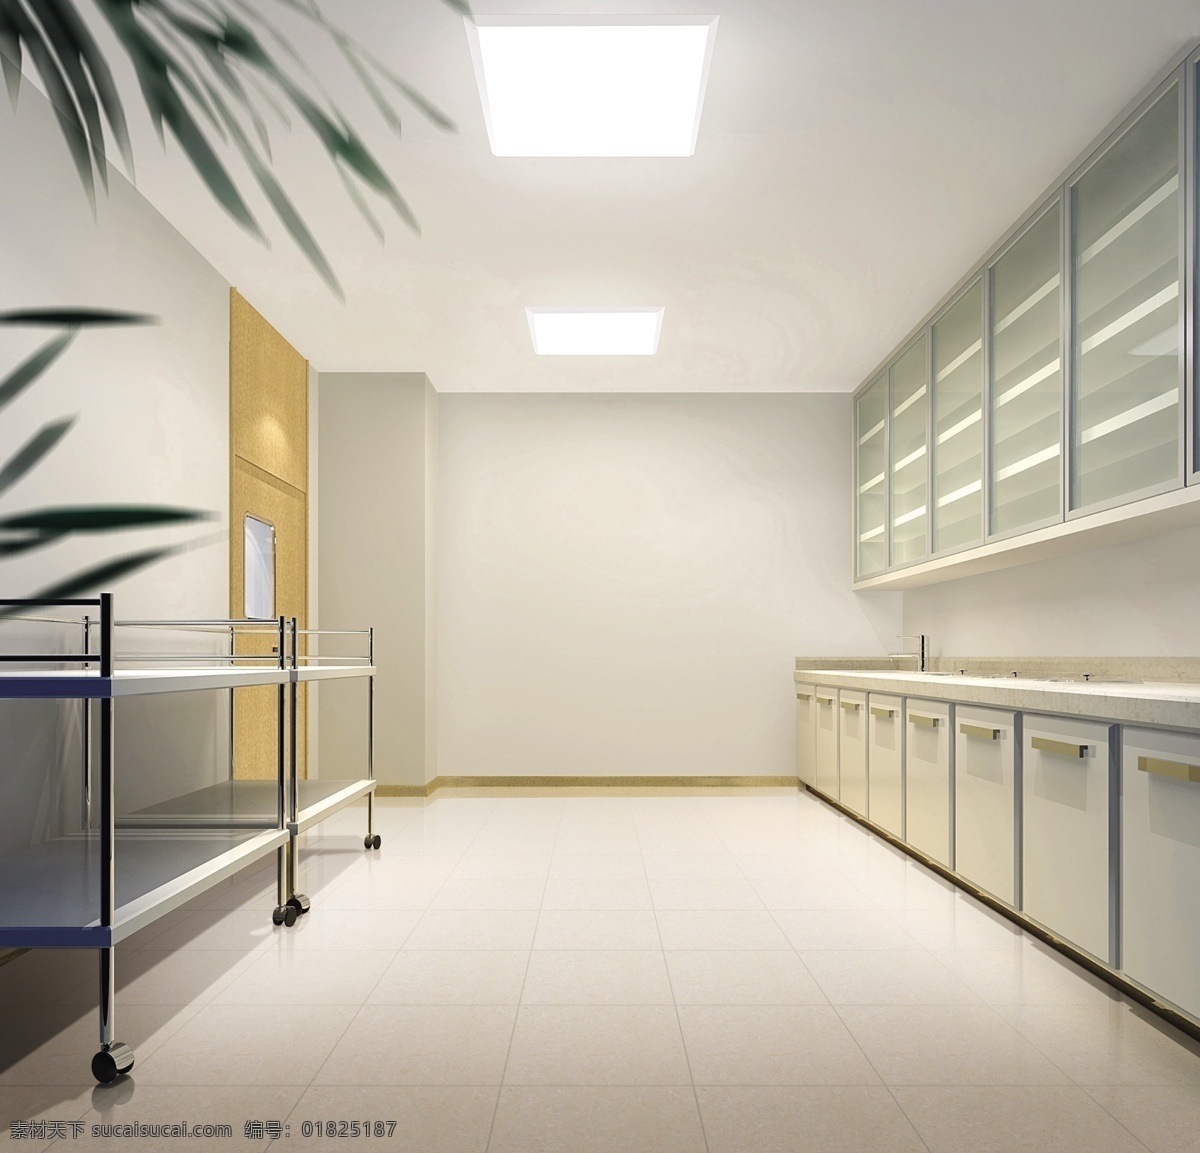 医院 玻璃 柜子 环境设计 室内设计 叶子 医院素材下载 源文件 医院模板下载 装饰素材